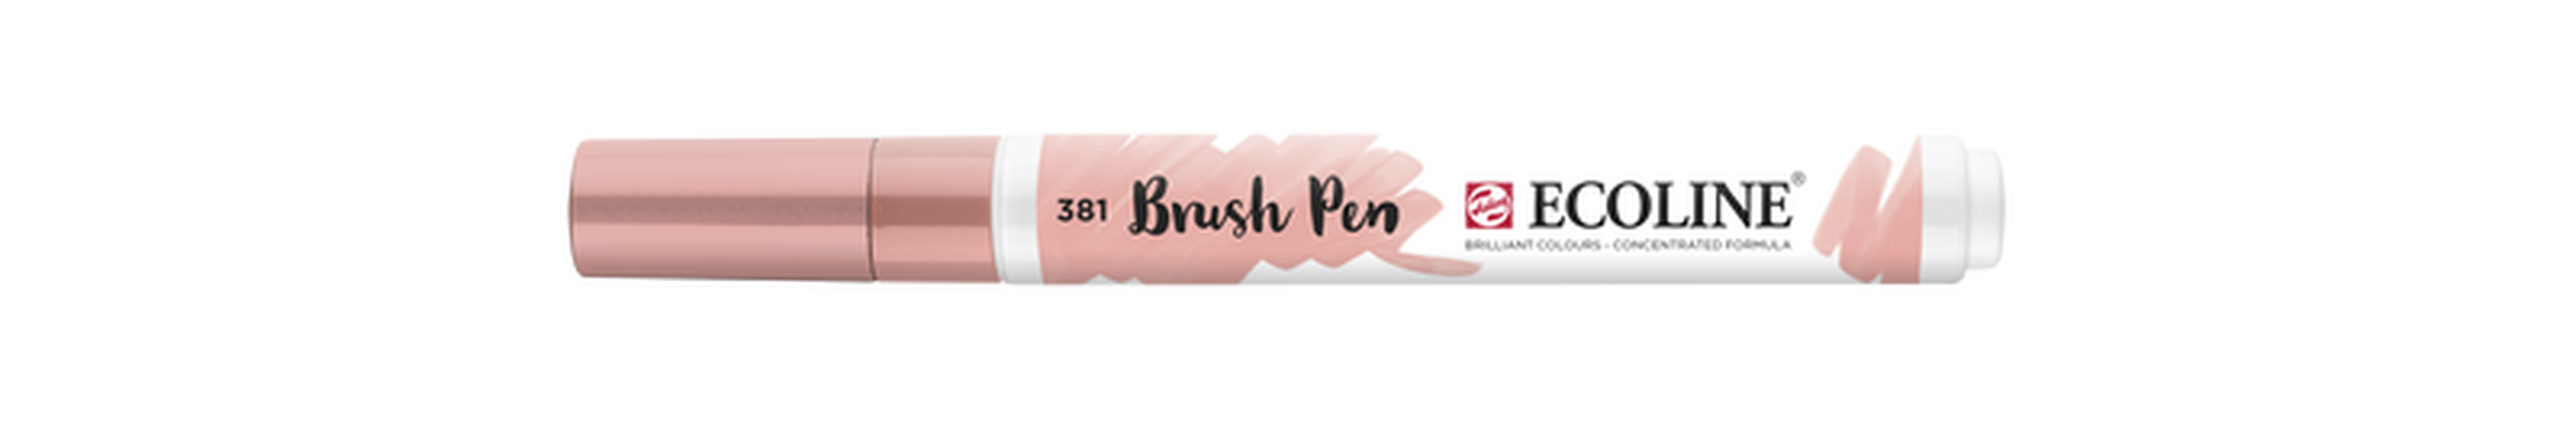 Talens Brush Pen Ecoline Number 381 Color Pastel Red